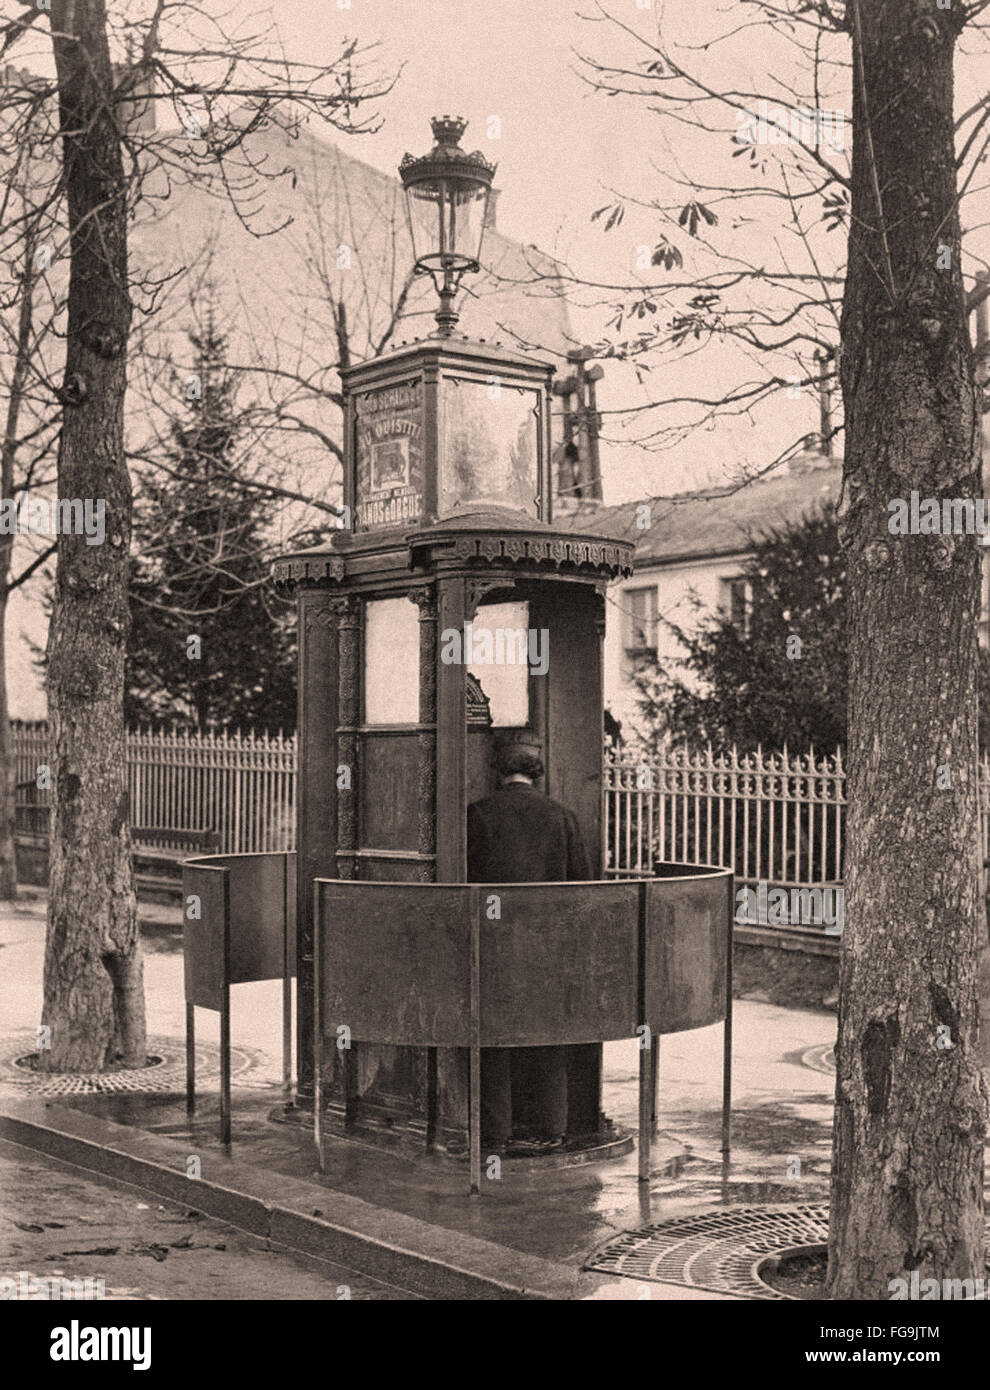 Public Urinals in Paris in the 19th Century Stock Photo